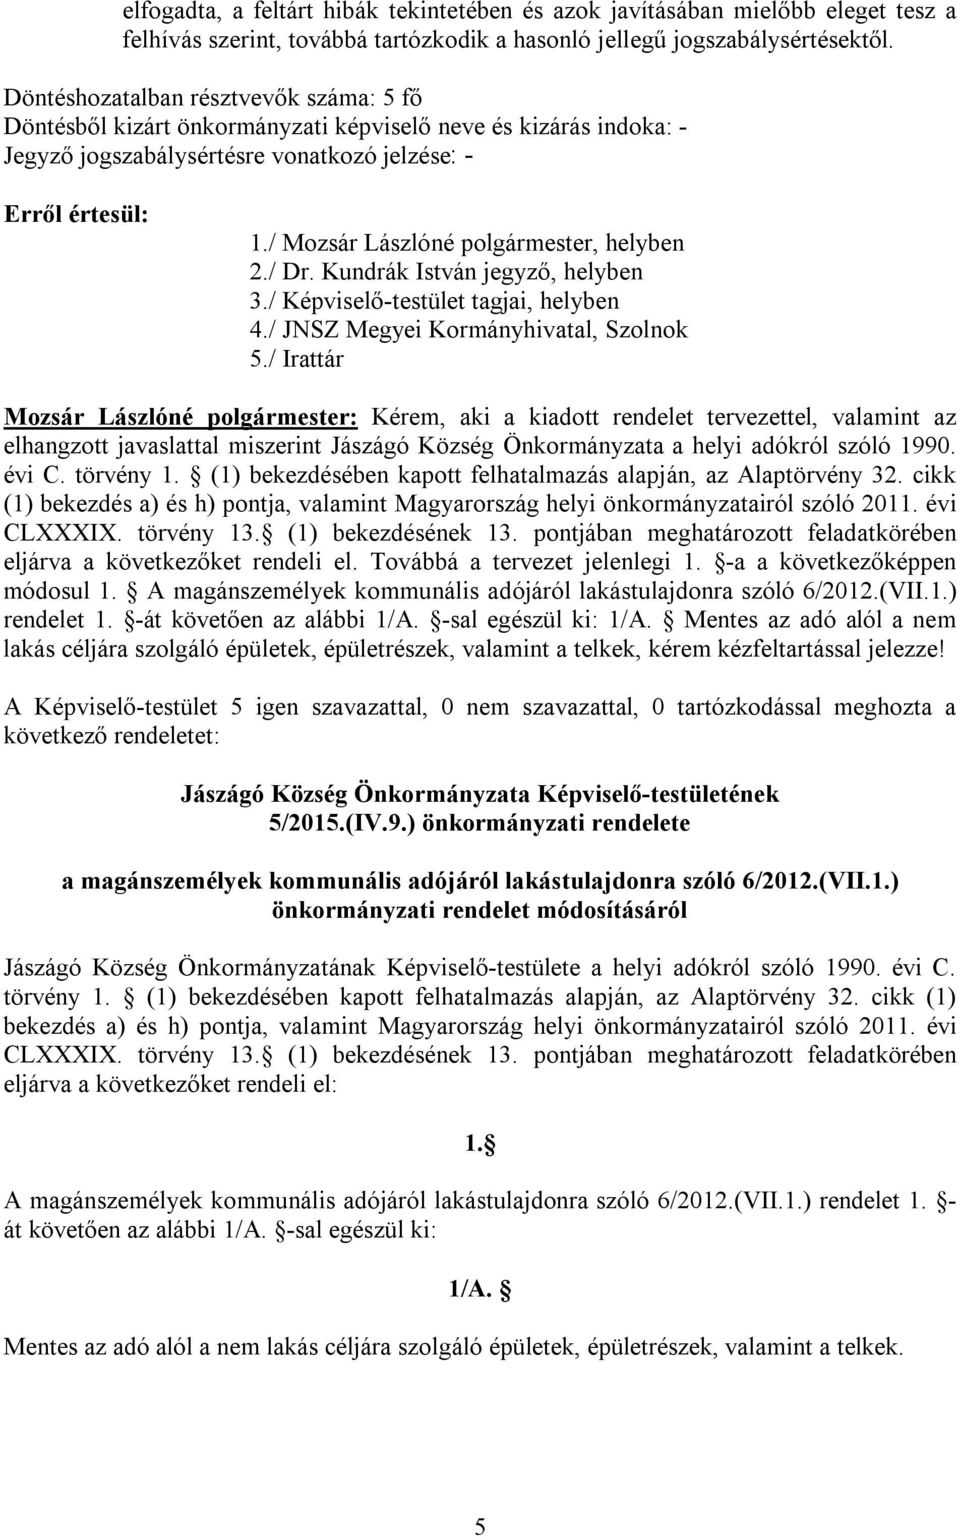 törvény 1. (1) bekezdésében kapott felhatalmazás alapján, az Alaptörvény 32. cikk (1) bekezdés a) és h) pontja, valamint Magyarország helyi önkormányzatairól szóló 2011. évi CLXXXIX. törvény 13.